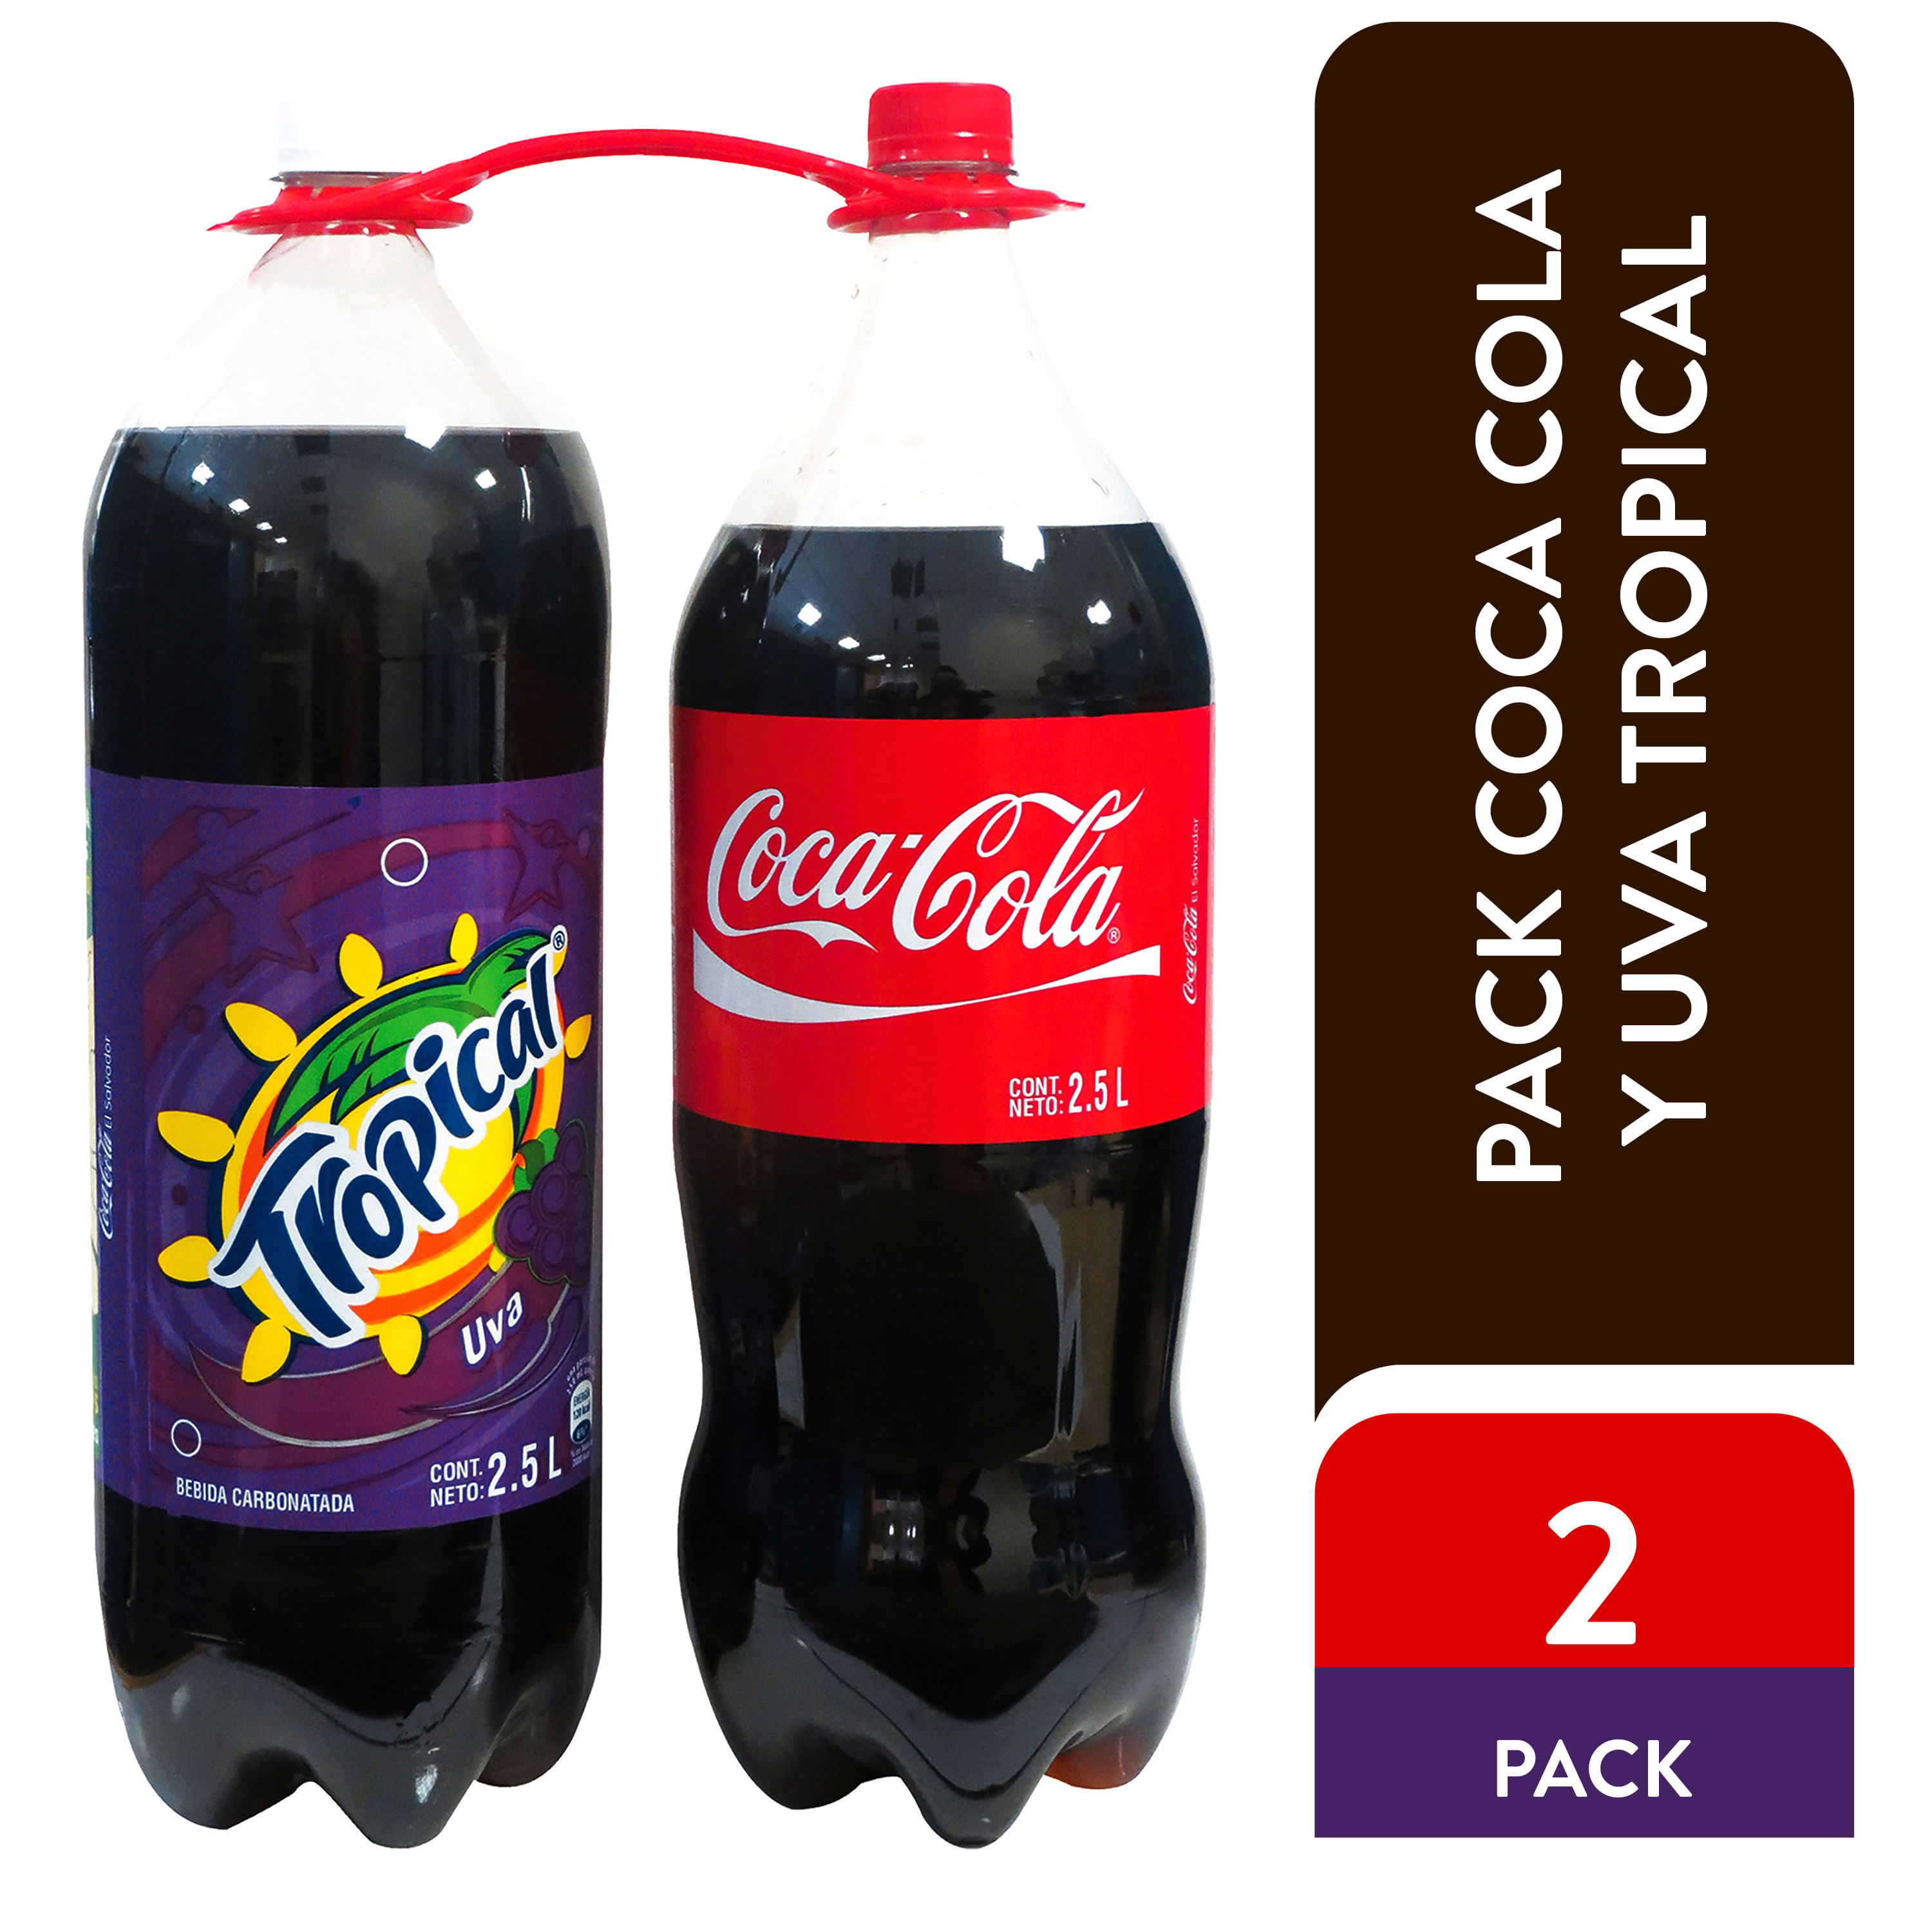 Gaseosa-Coca-Cola-Tropical-Uva-regular-2pack-5-L-1-3694